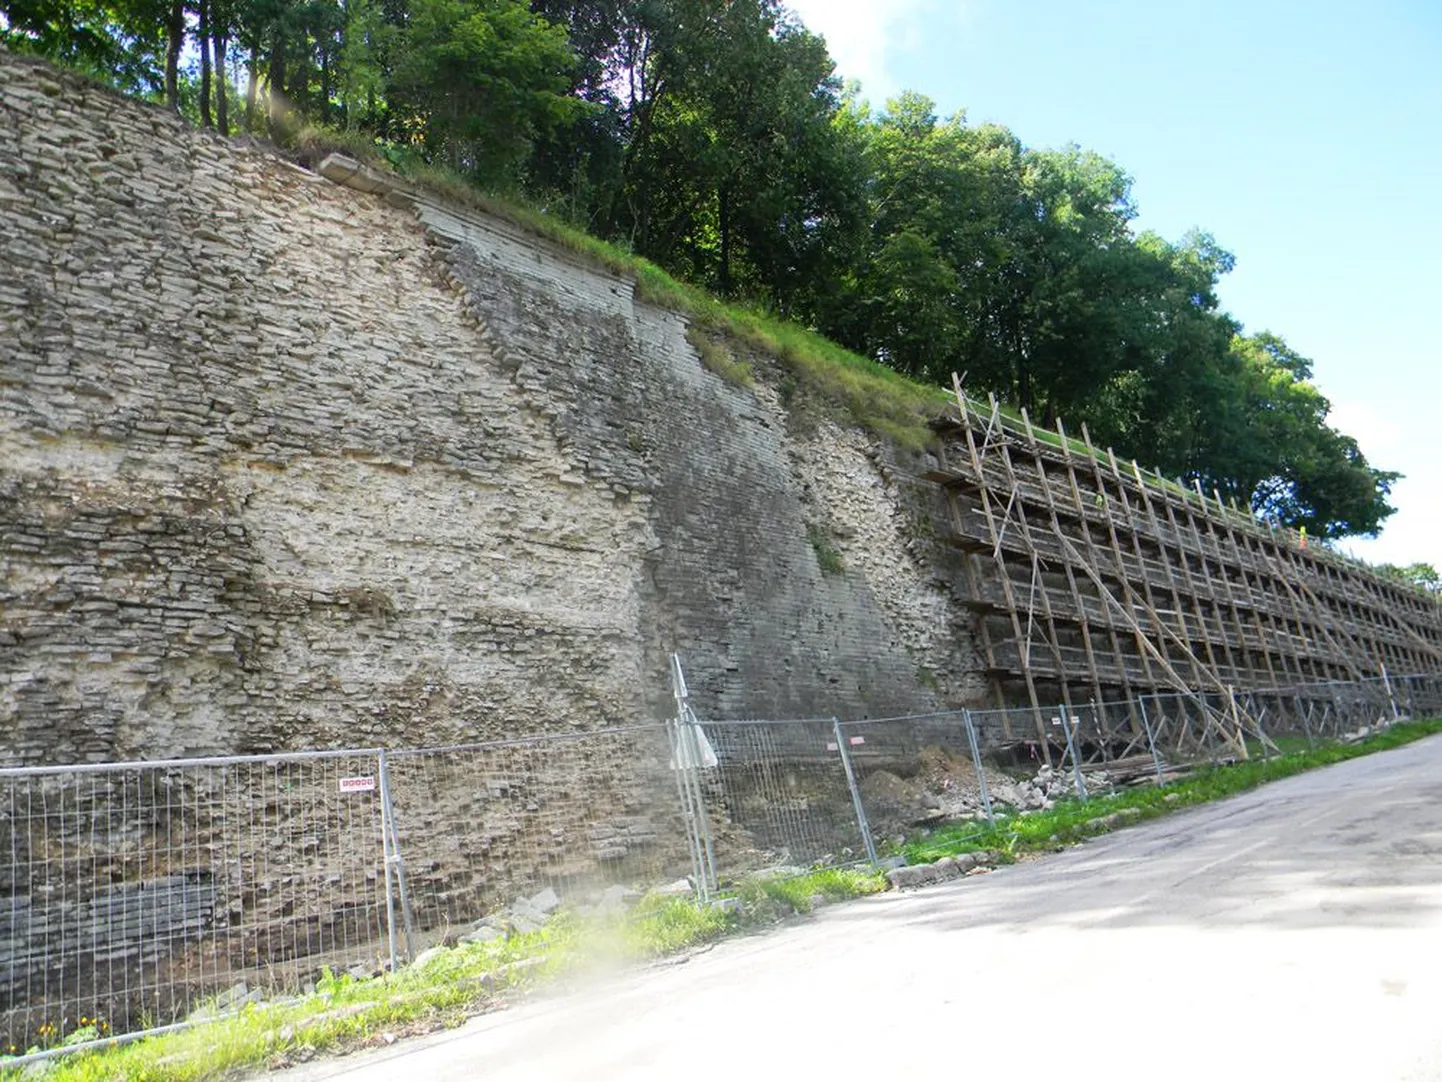 Tuleva aasta augustiks tuleb ennistada üle 200 meetri müüri, mille väliskiht on täiesti lagunenud.